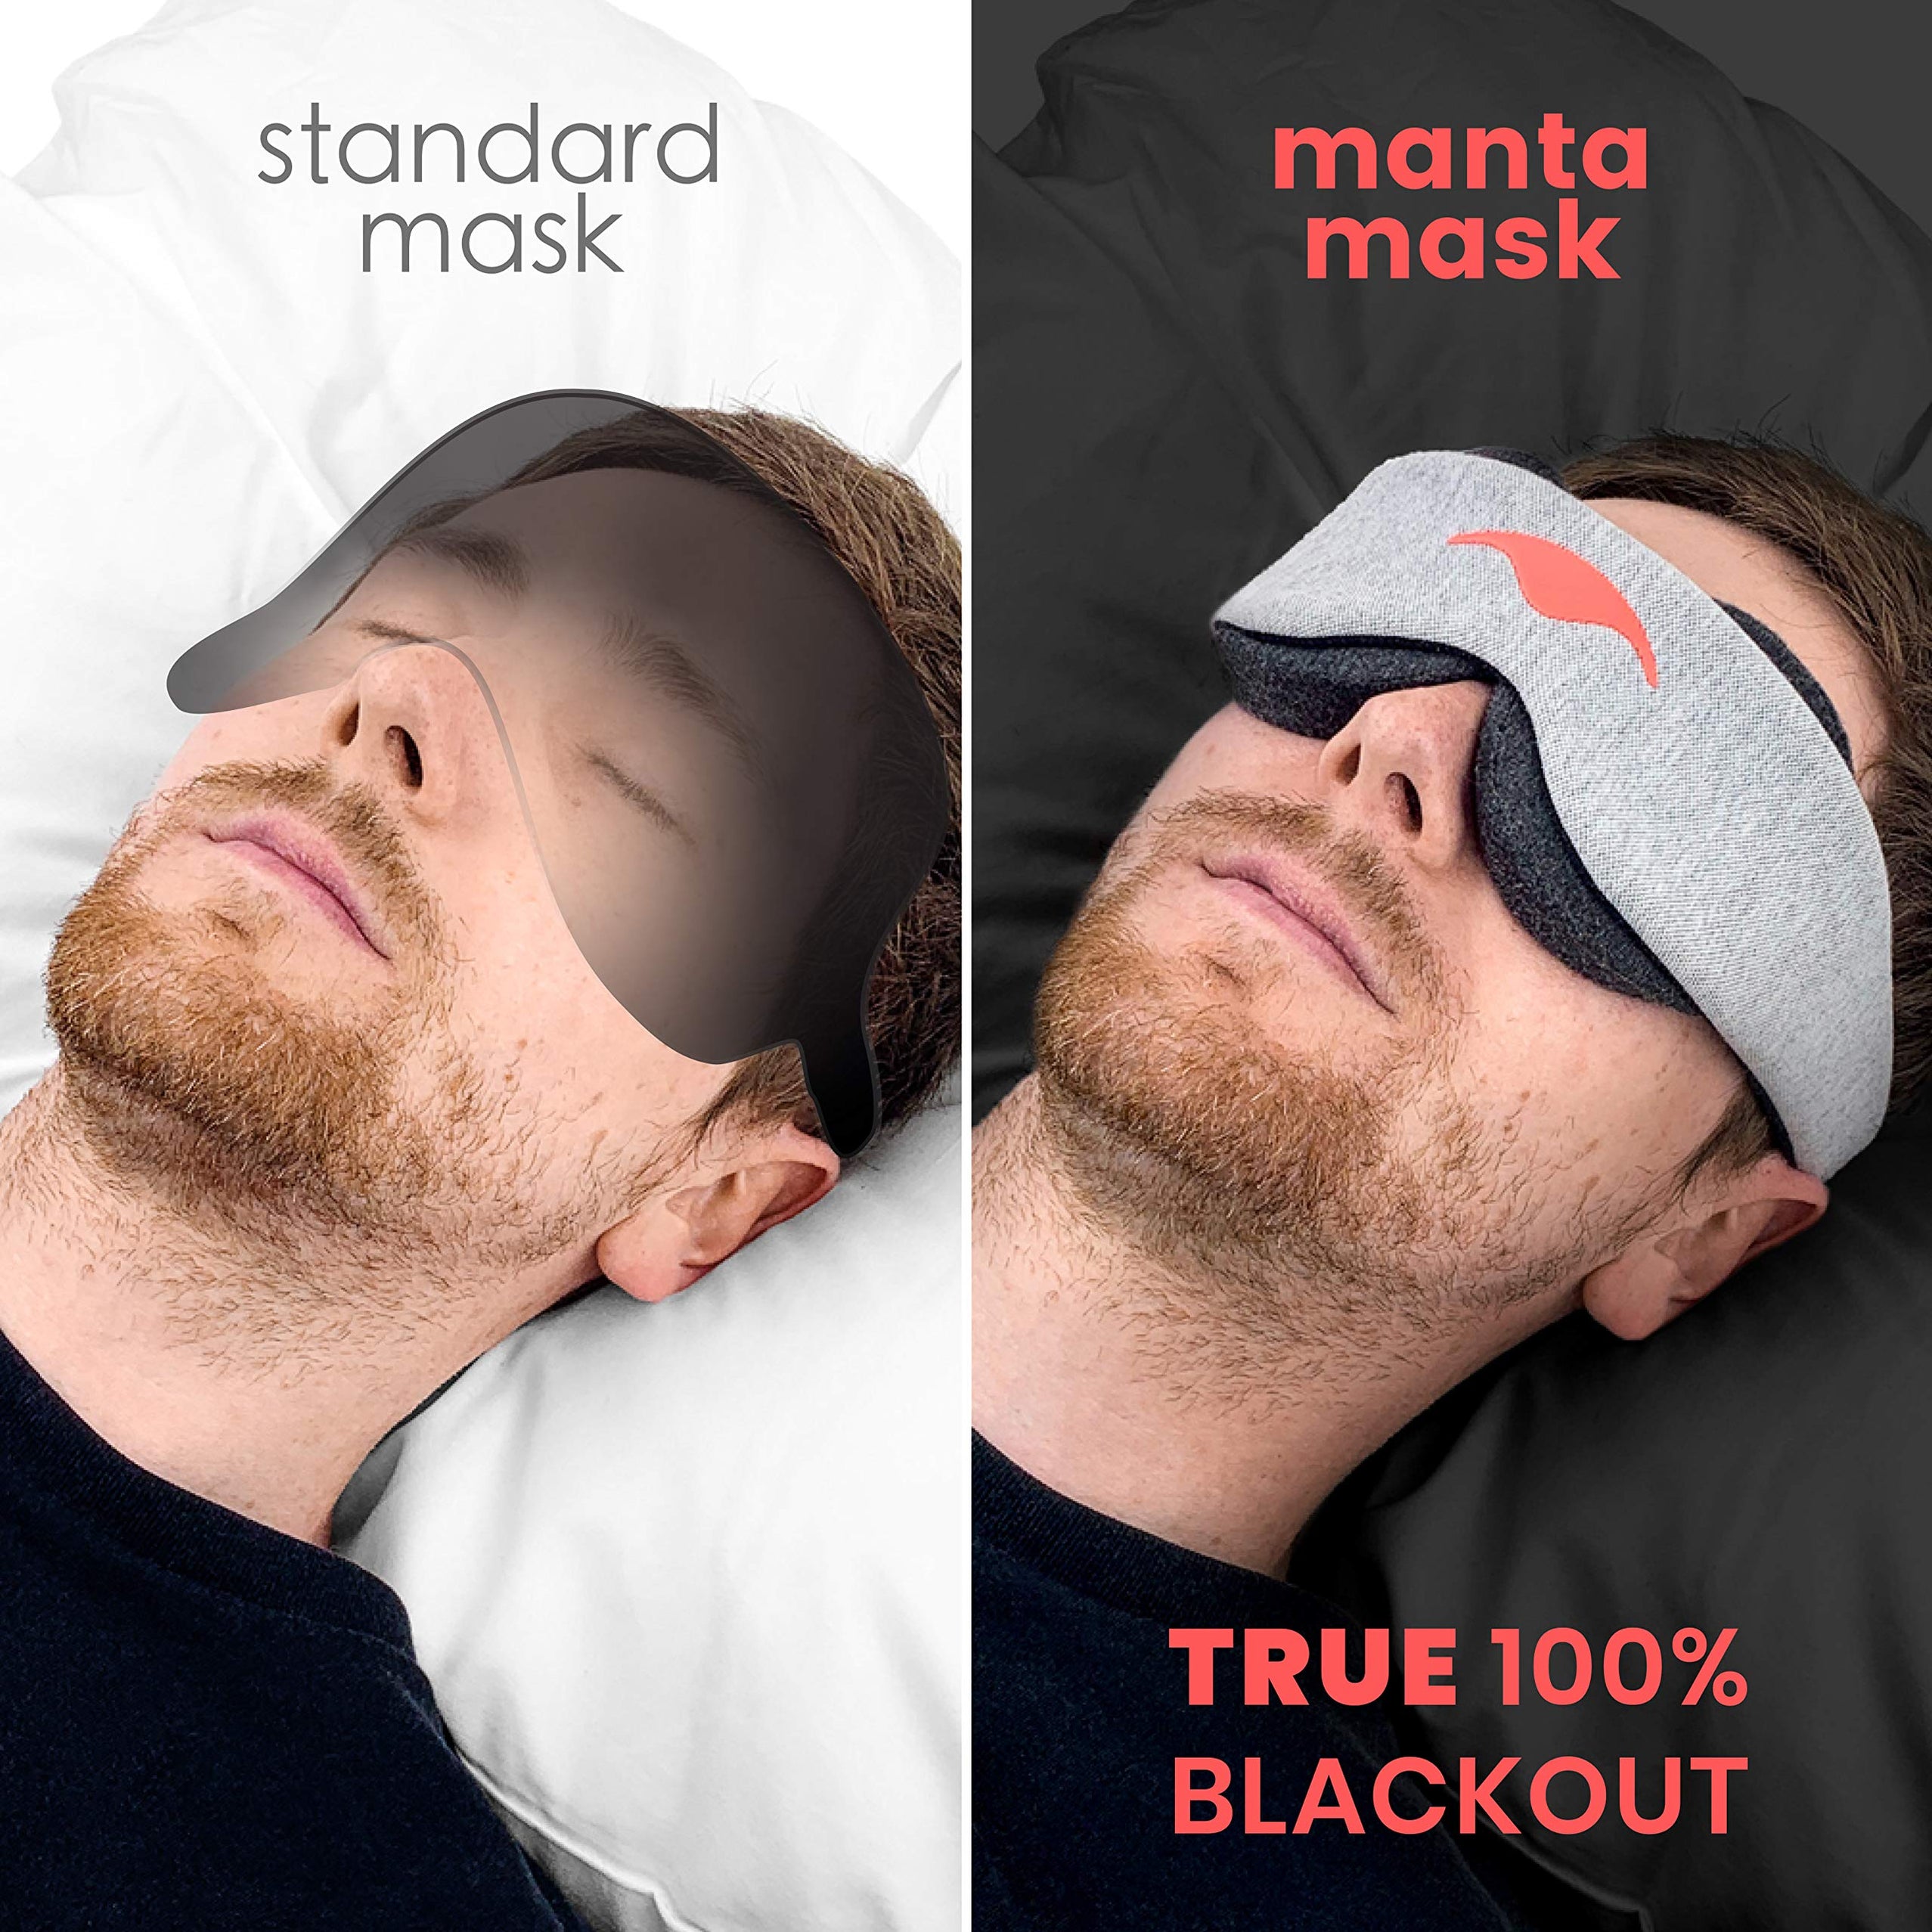 manta sleep mask coupon code